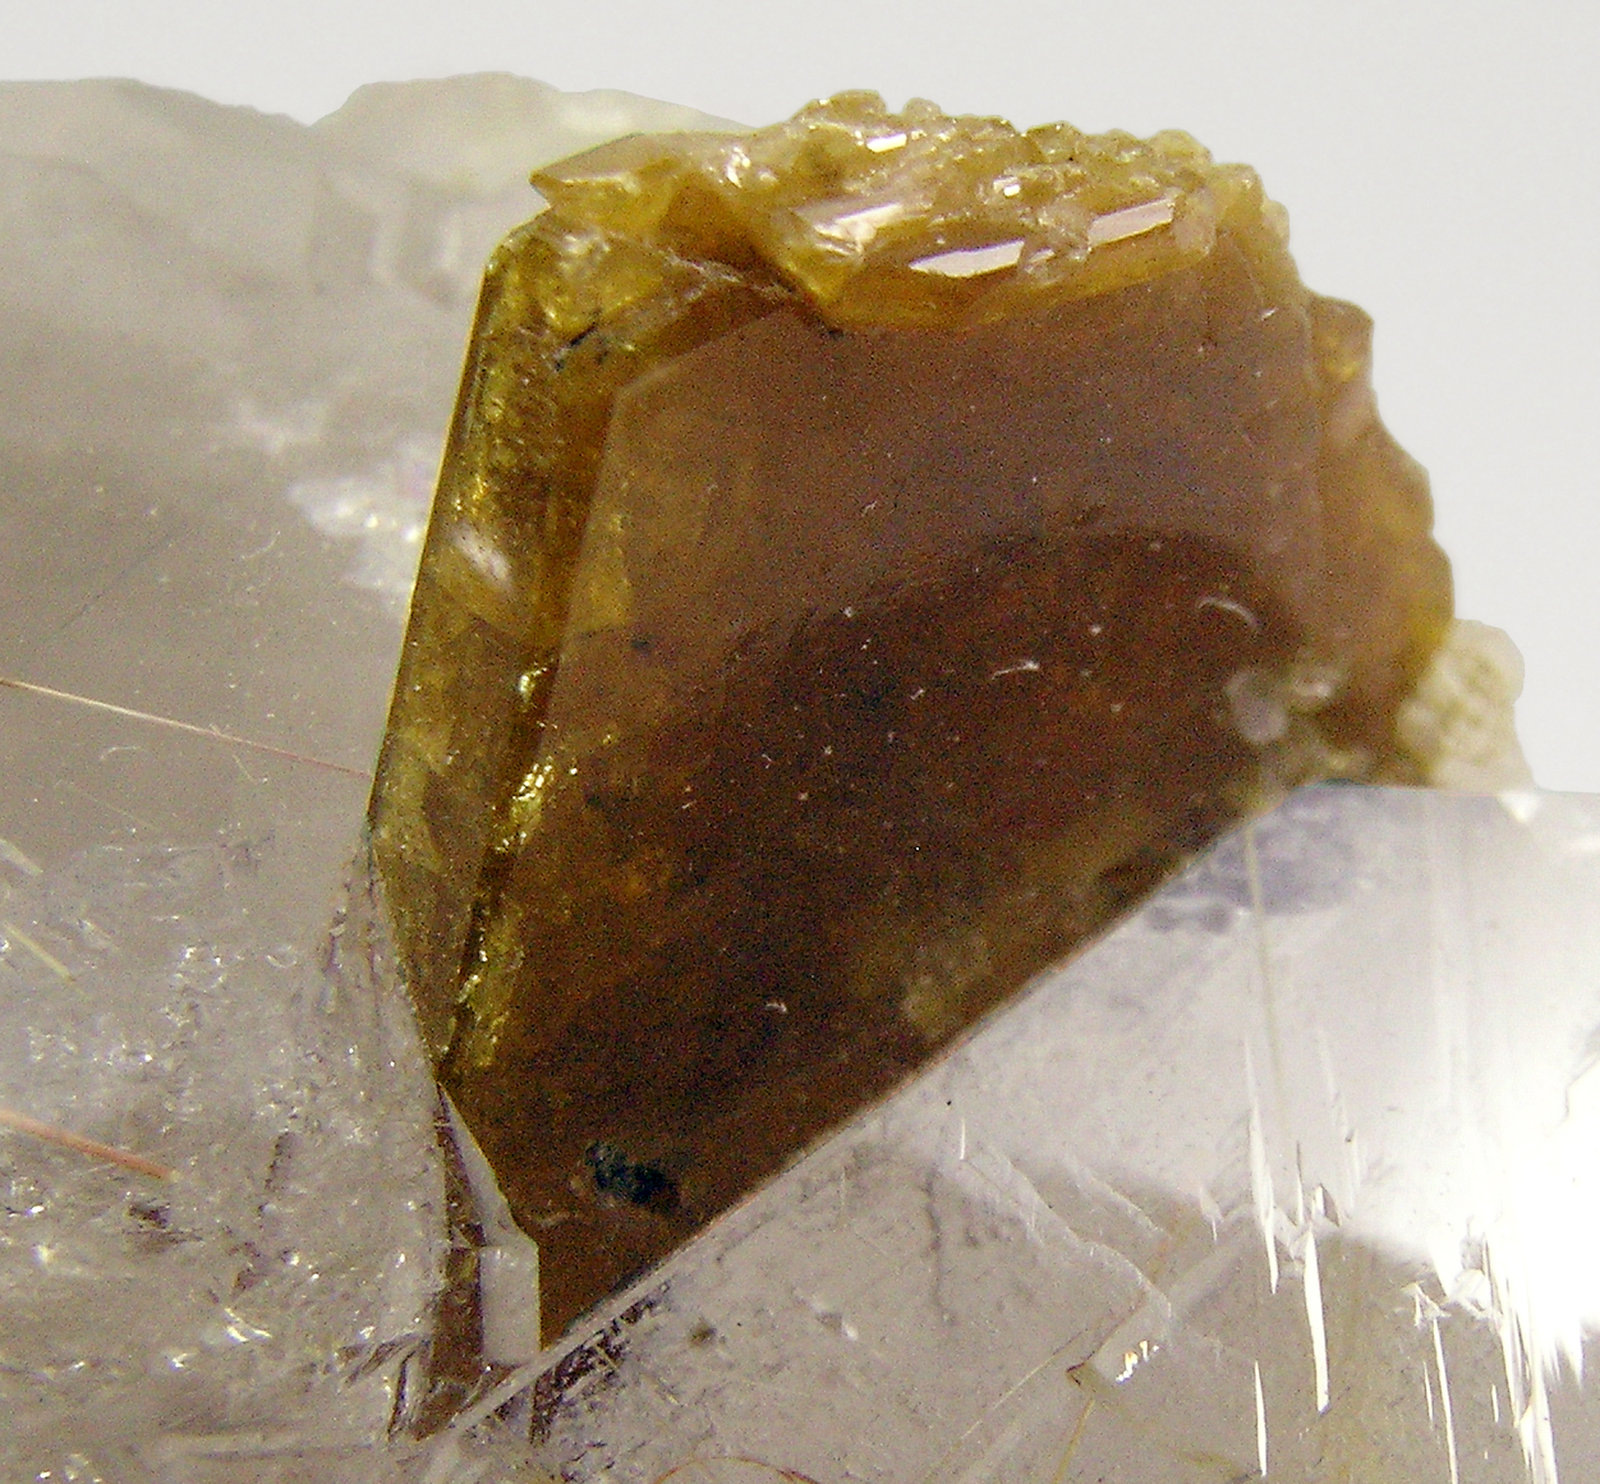 specimens/s_imagesQ7/Smoky_quartz-TN54Q7d3.jpg